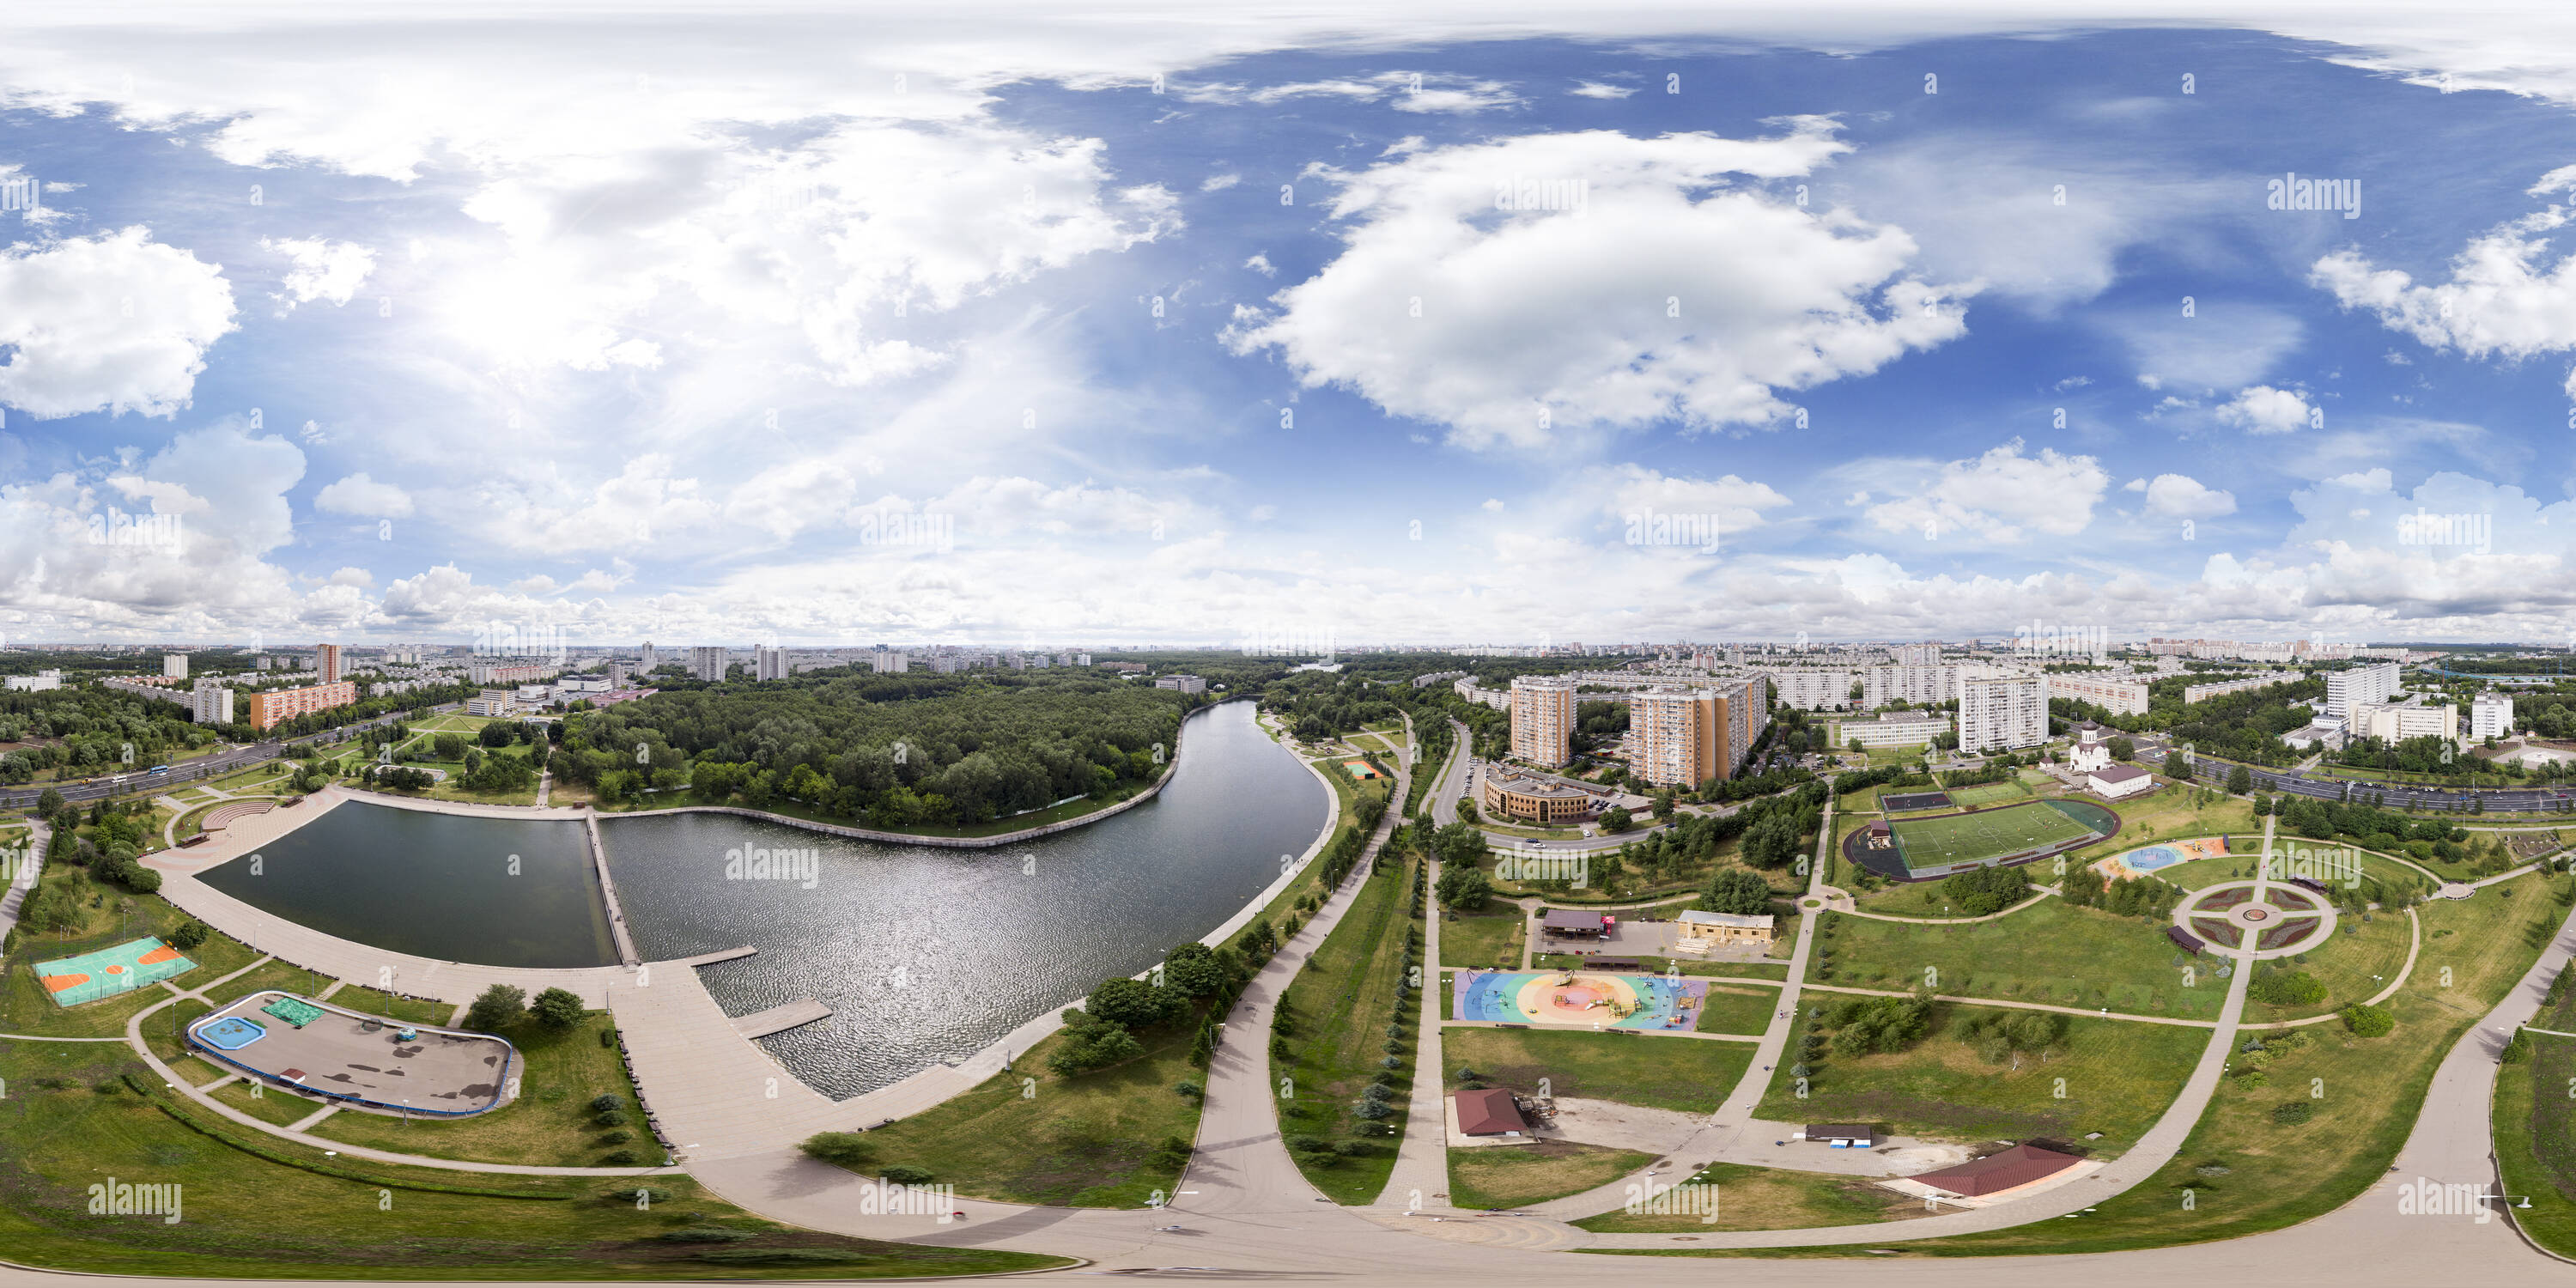 Visualizzazione panoramica a 360 gradi di Mosca, Veshnyaki